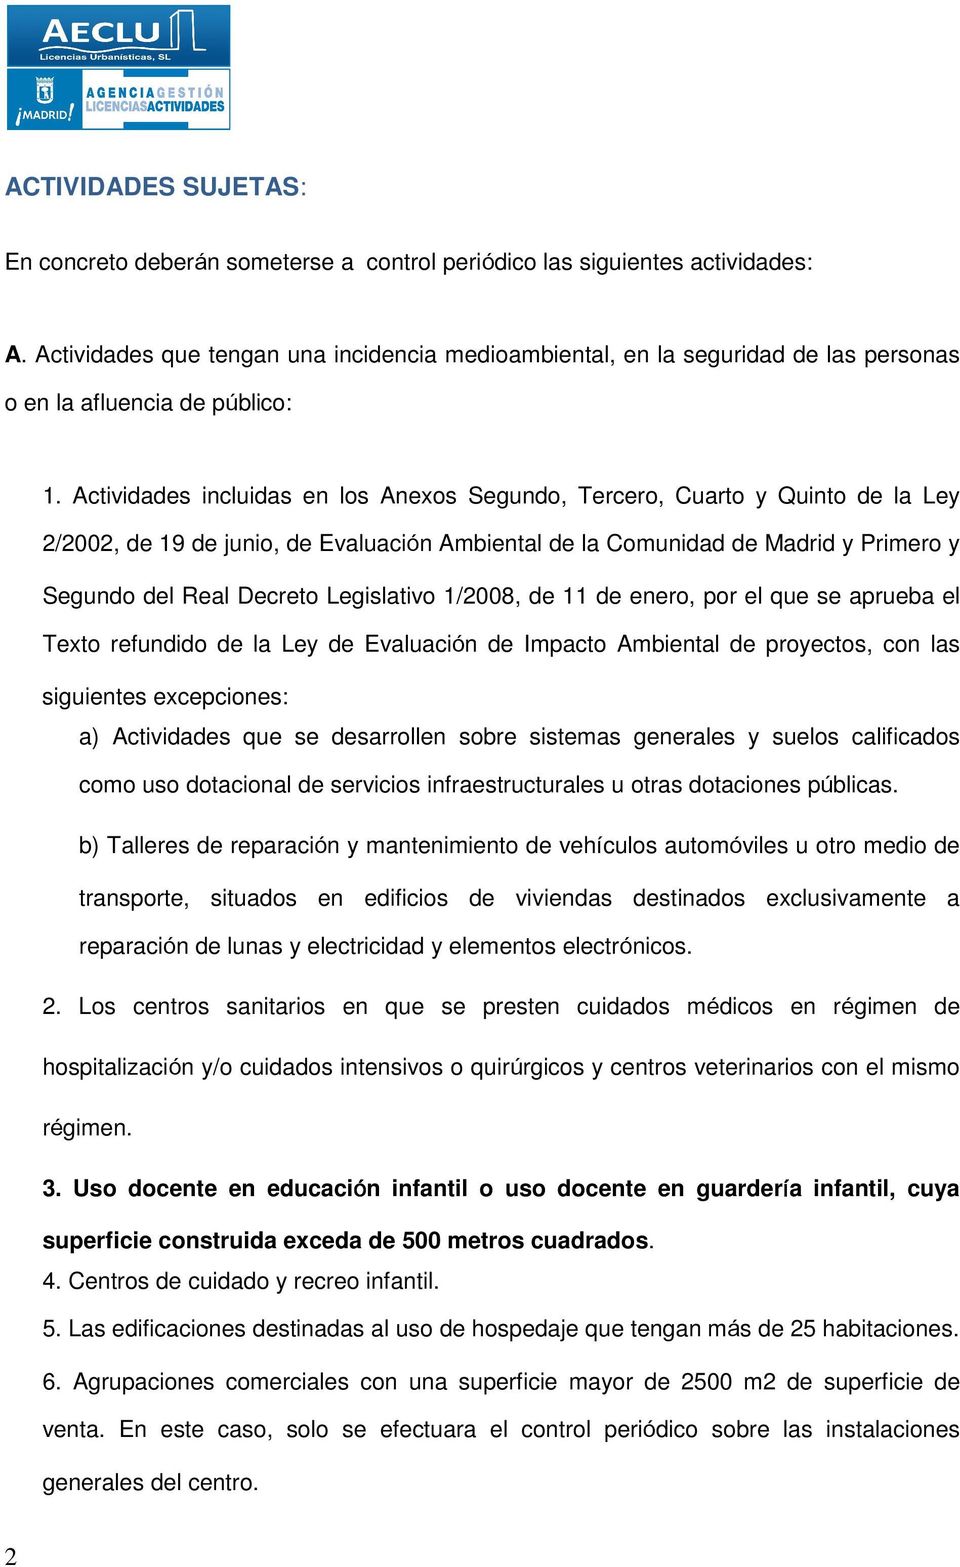 Actividades incluidas en los Anexos Segundo, Tercero, Cuarto y Quinto de la Ley 2/2002, de 19 de junio, de Evaluación Ambiental de la Comunidad de Madrid y Primero y Segundo del Real Decreto